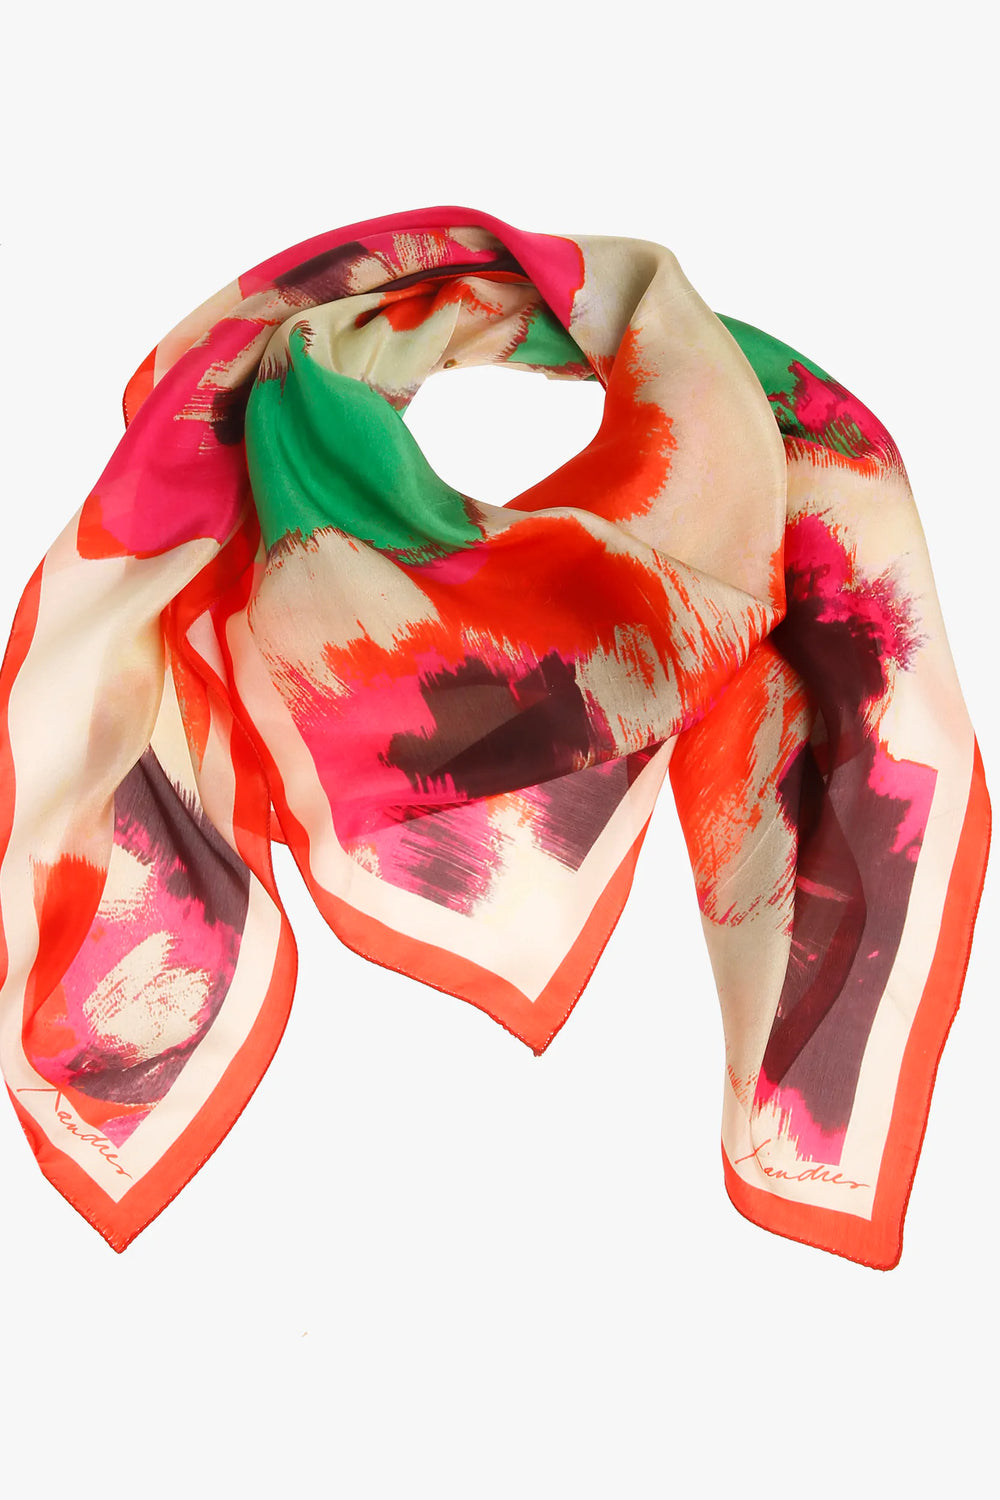 zijde sjaal met prachtig motief - xandres - silk-flower-scarf-papaya - grote maten - dameskleding - kledingwinkel - herent - leuven